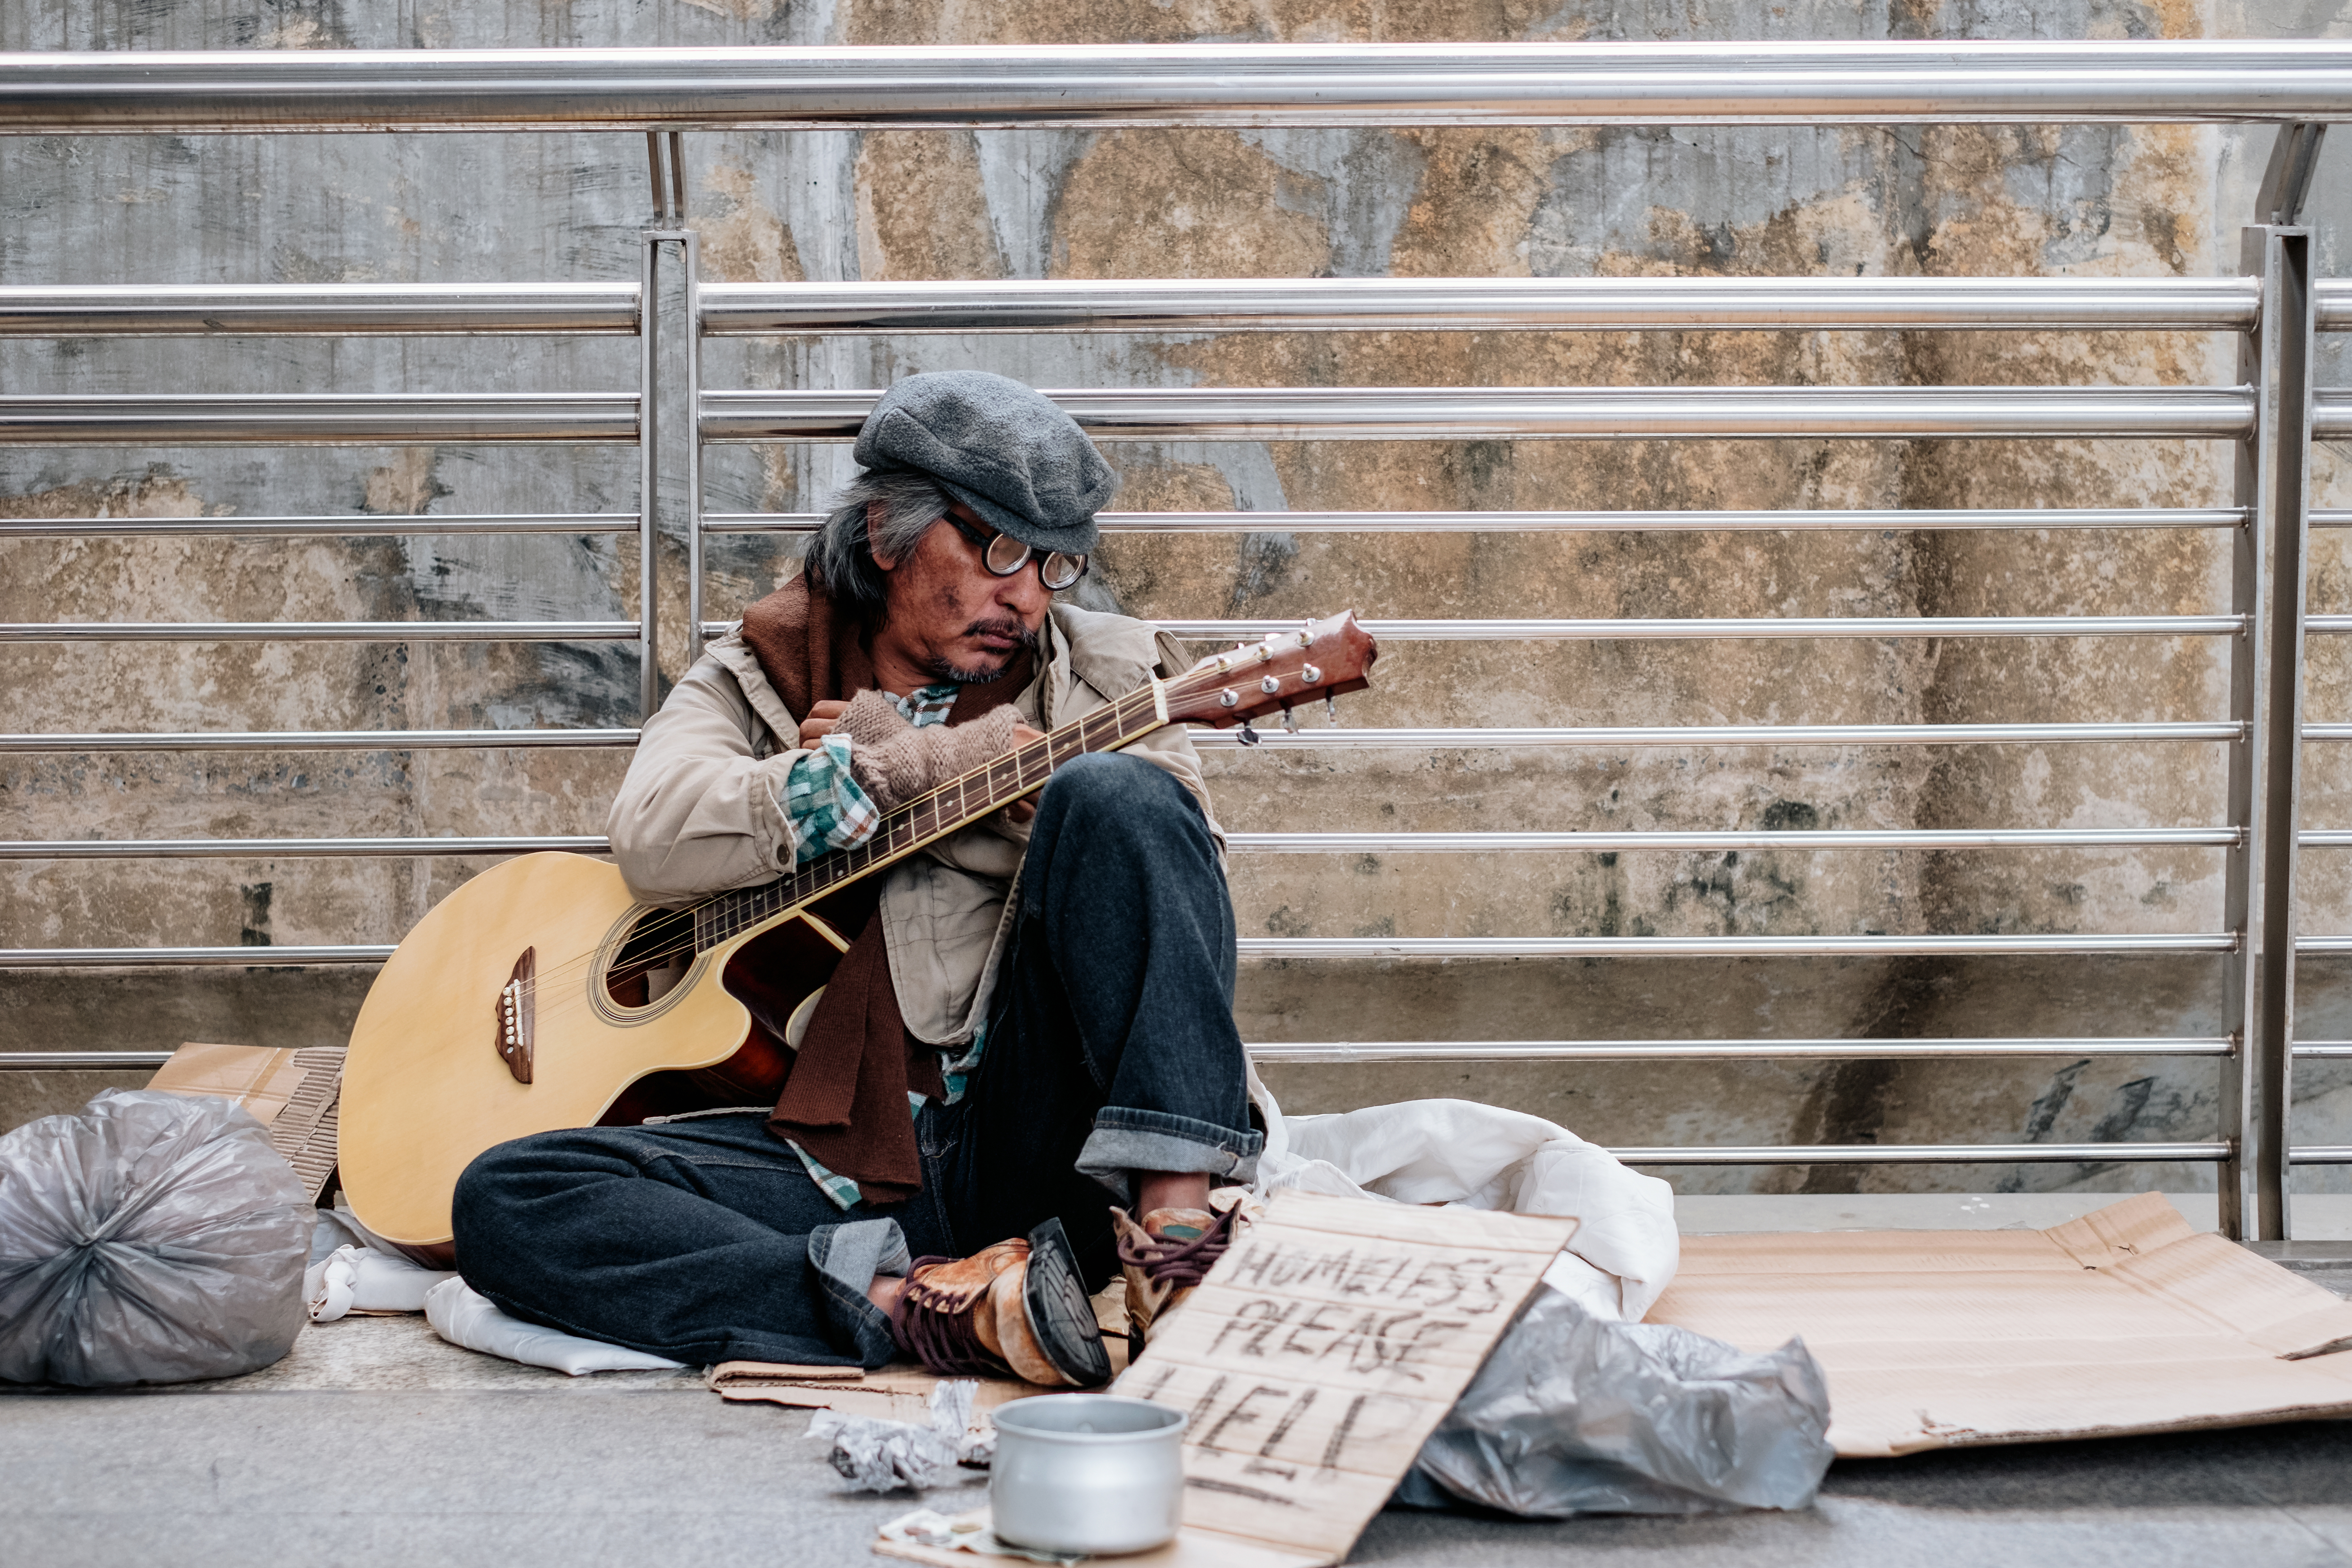 Indigente sentado con la guitarra en la mano. | Fuente: Shutterstock